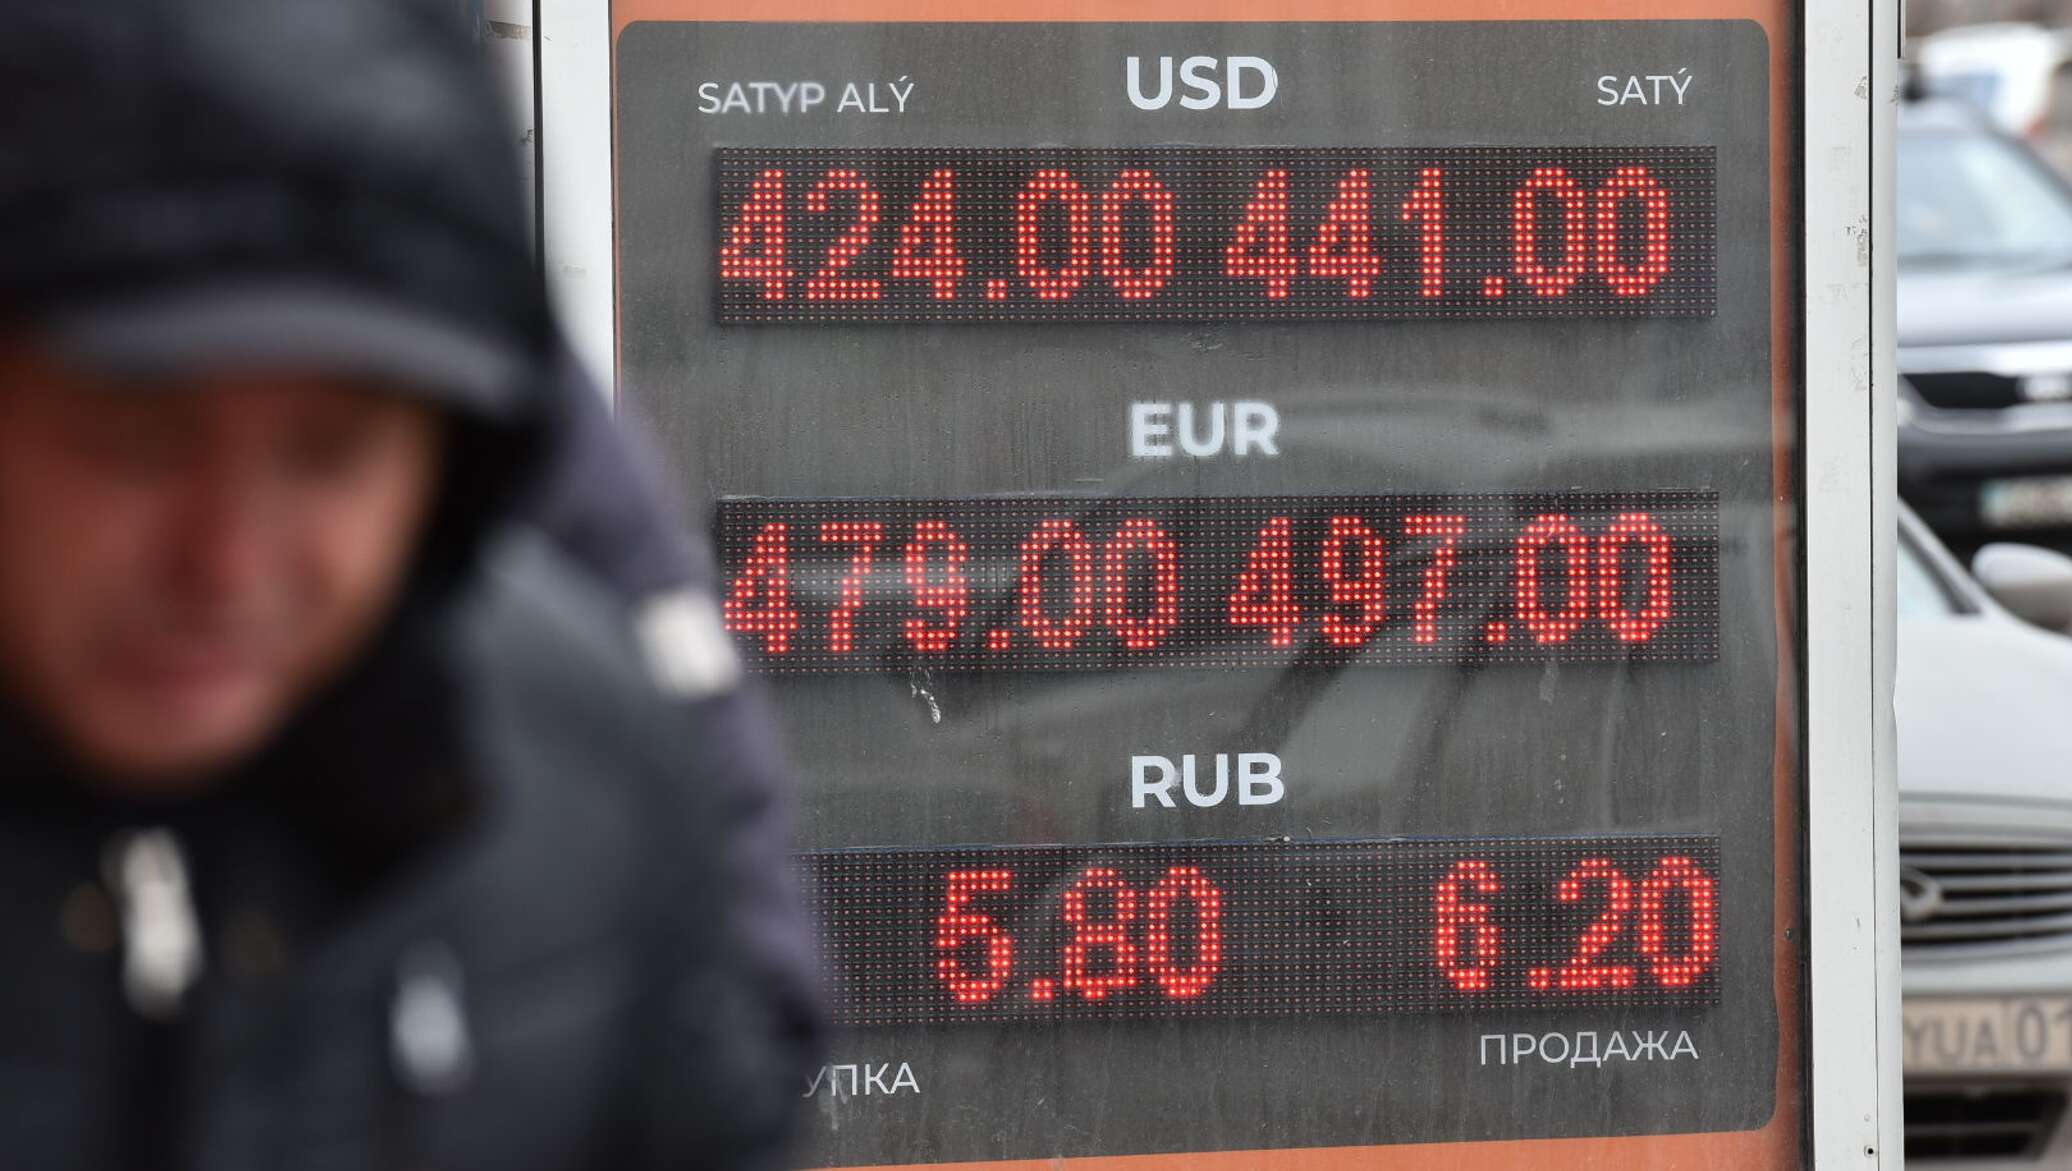 Обменные пункты в астане сегодня. Курс тенге к доллару. Пункт обмена валюты в Казахстане. Курс валют в Казахстане на сегодня в обменниках. Доллар на март 2013 года.